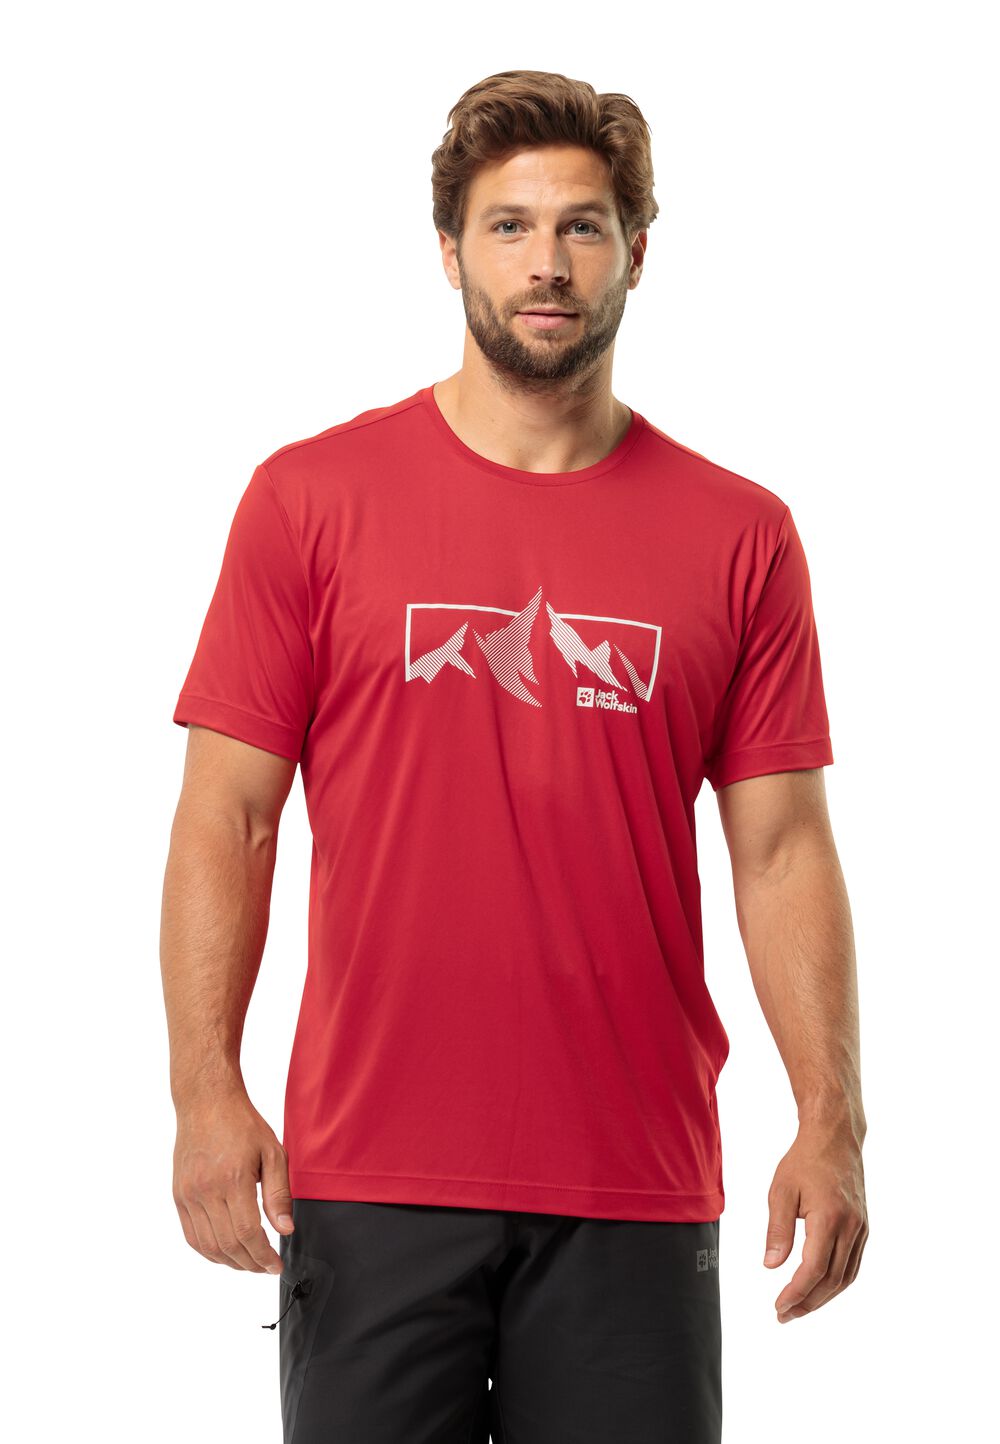 Jack Wolfskin Funktionsshirt Herren Peak Graphic T-Shirt Men S rot red glow von Jack Wolfskin